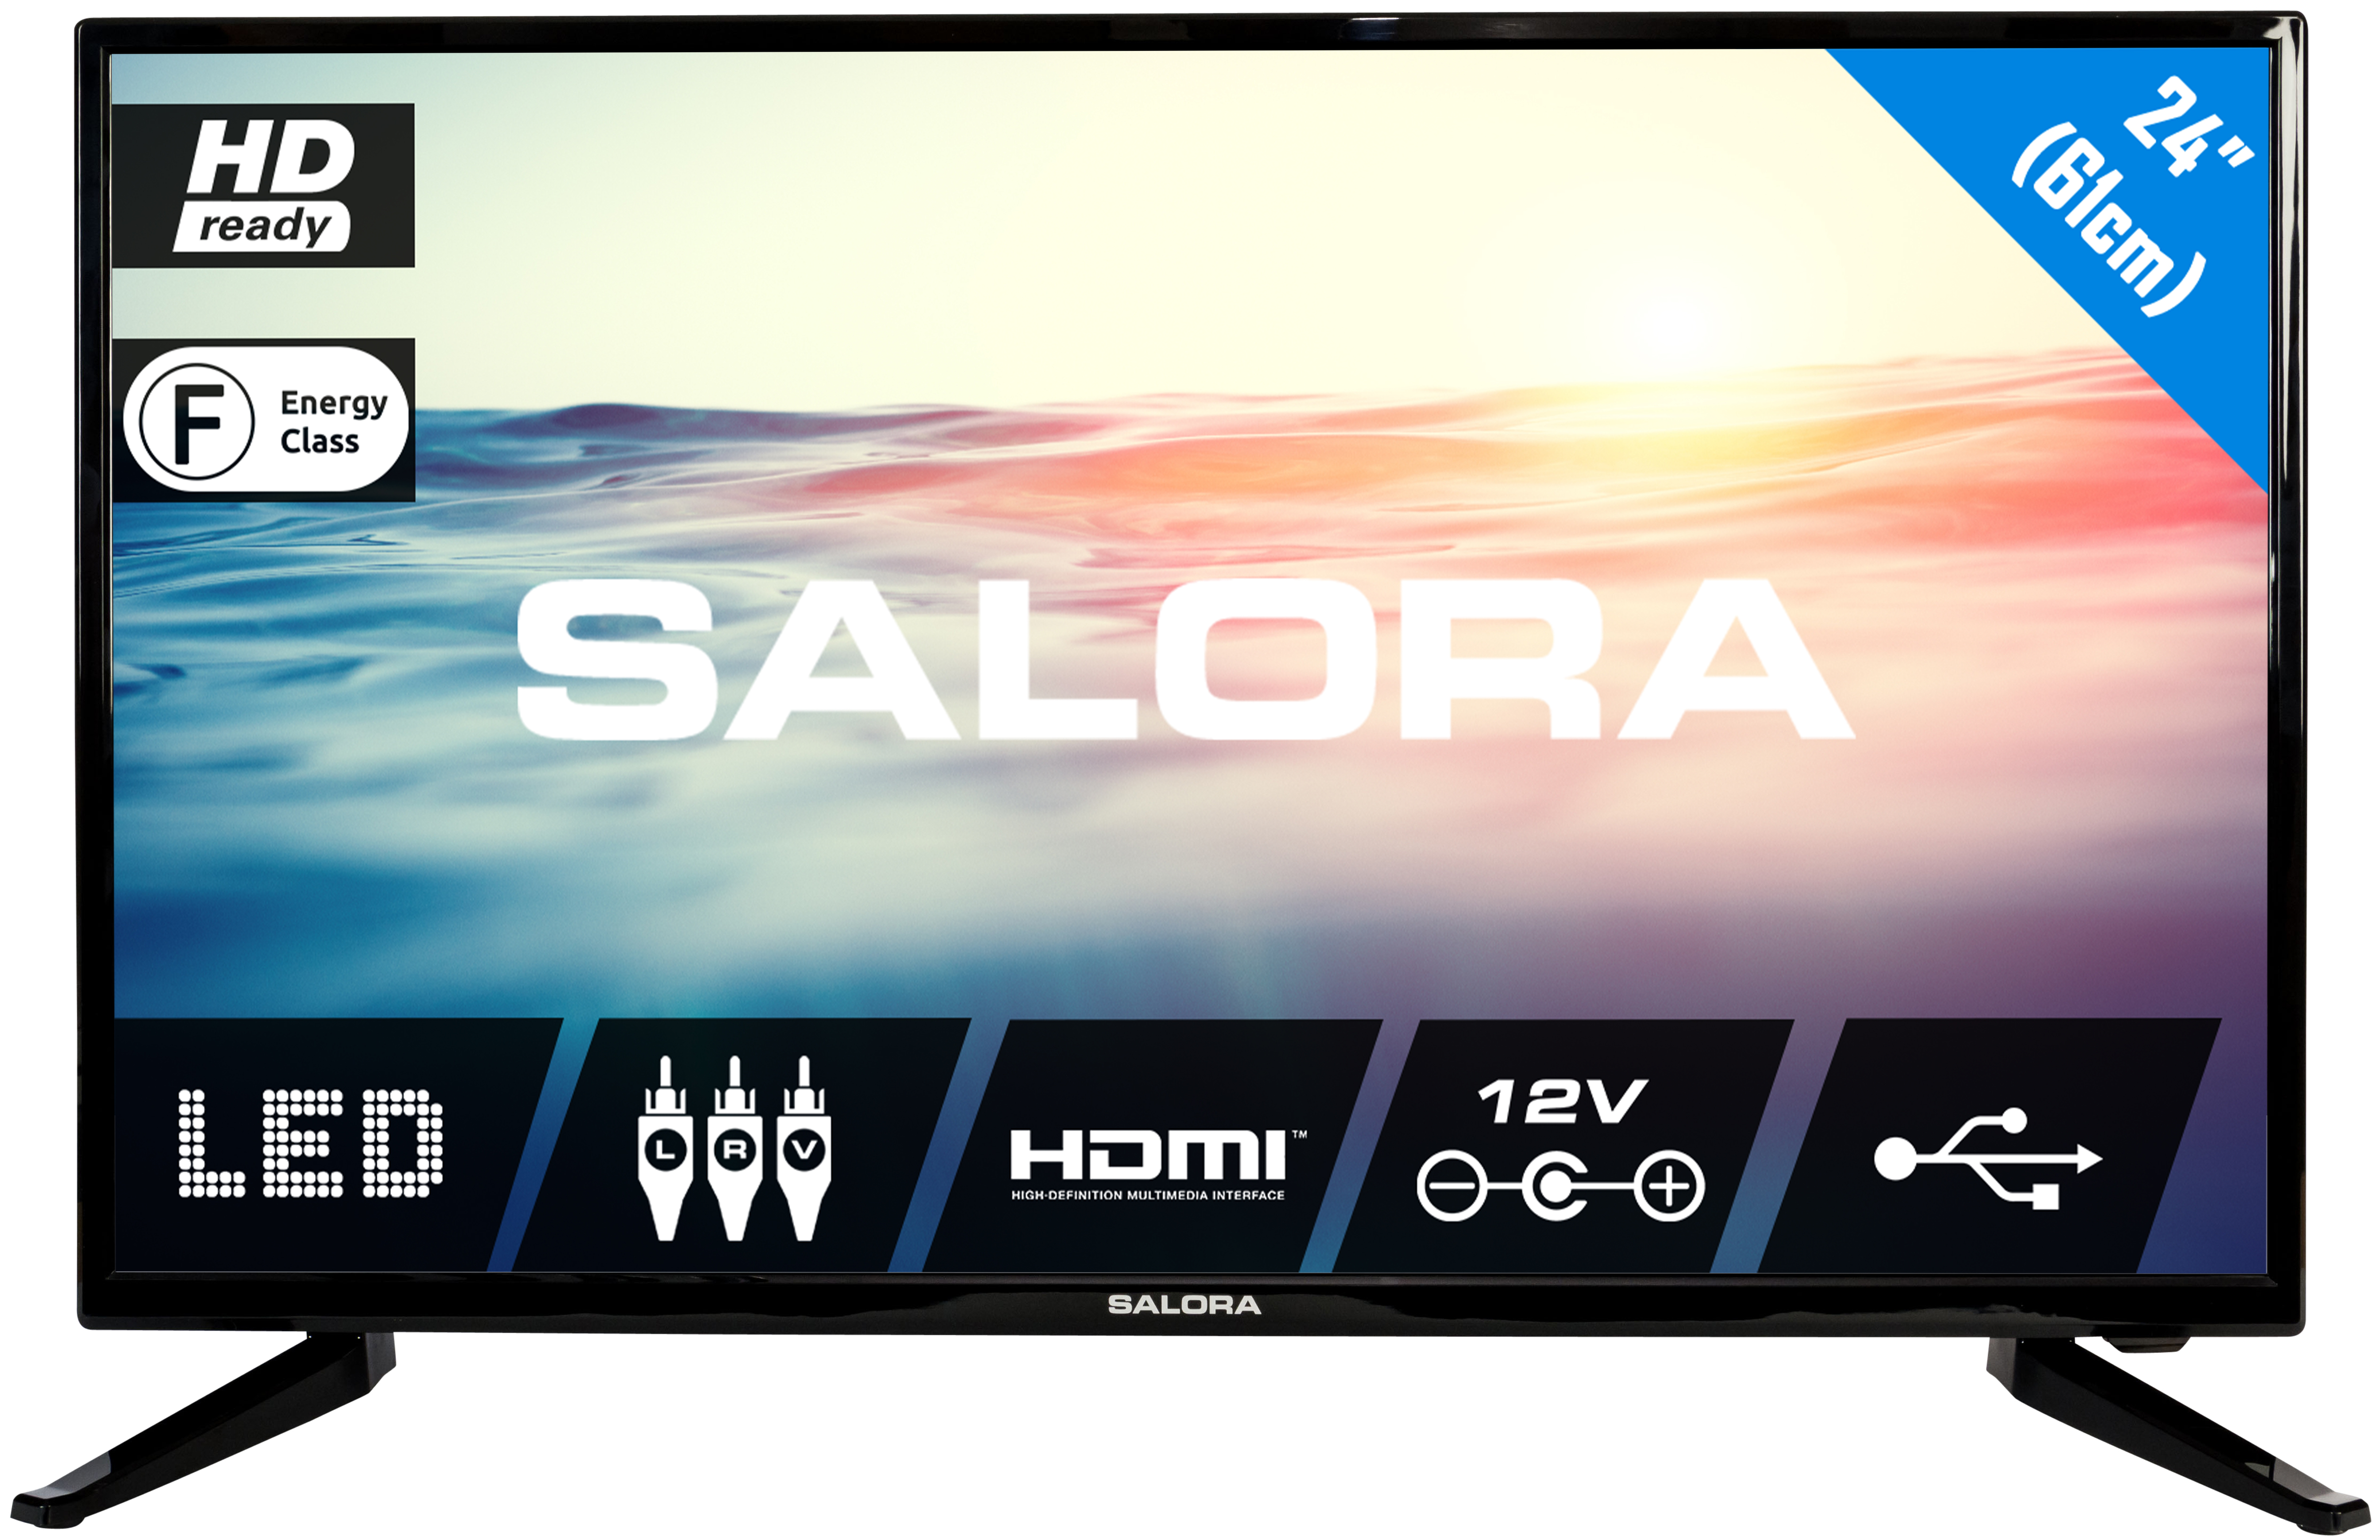 Salora 1600 series 24LED1600 TV